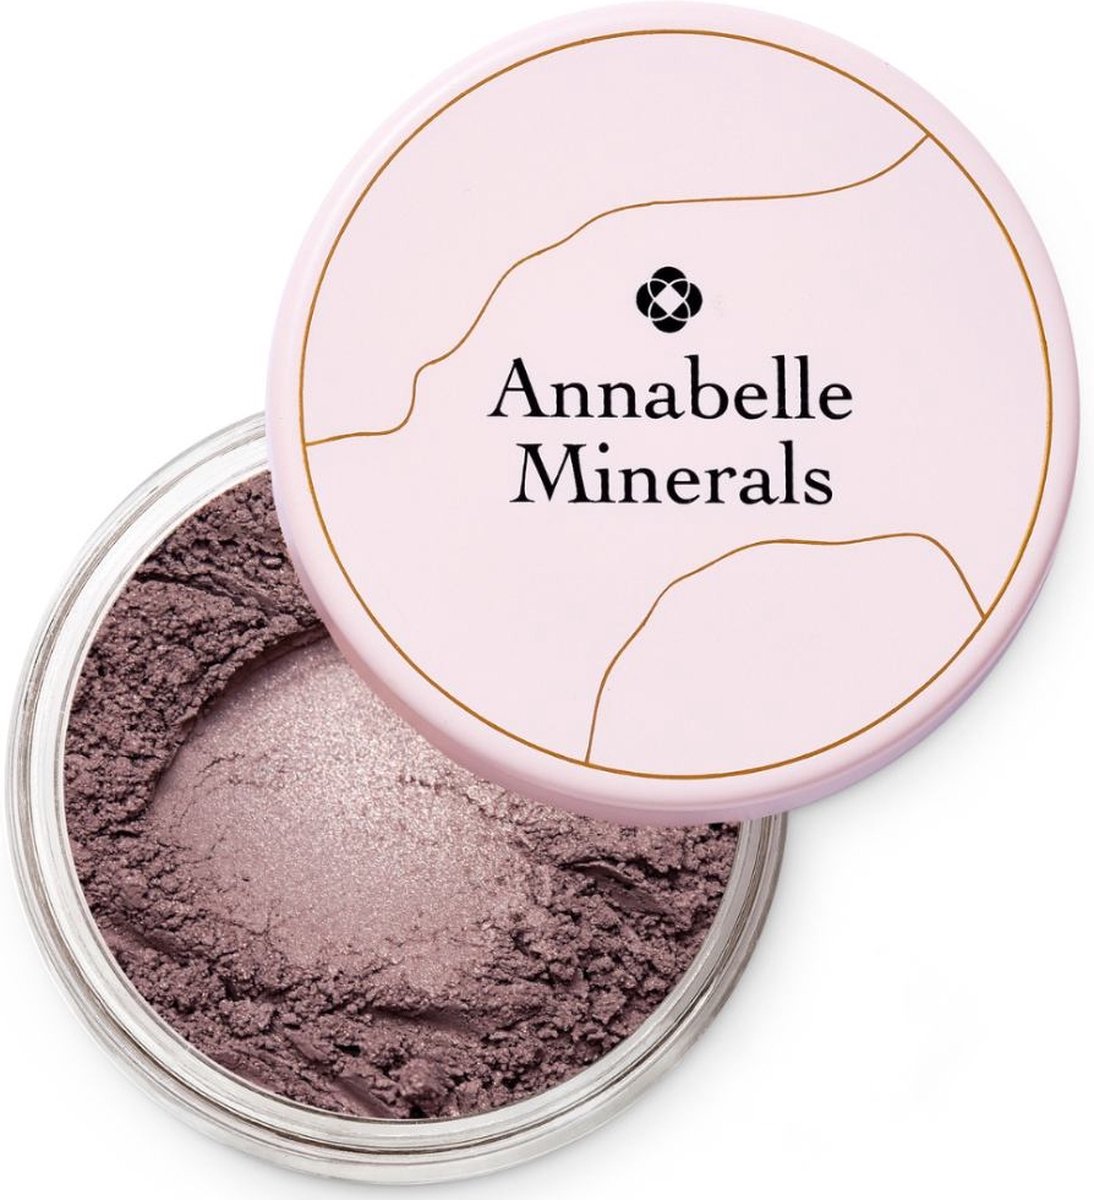 Annabelle Minerals - Mineral Eyeshadow Dark Colors - 3g